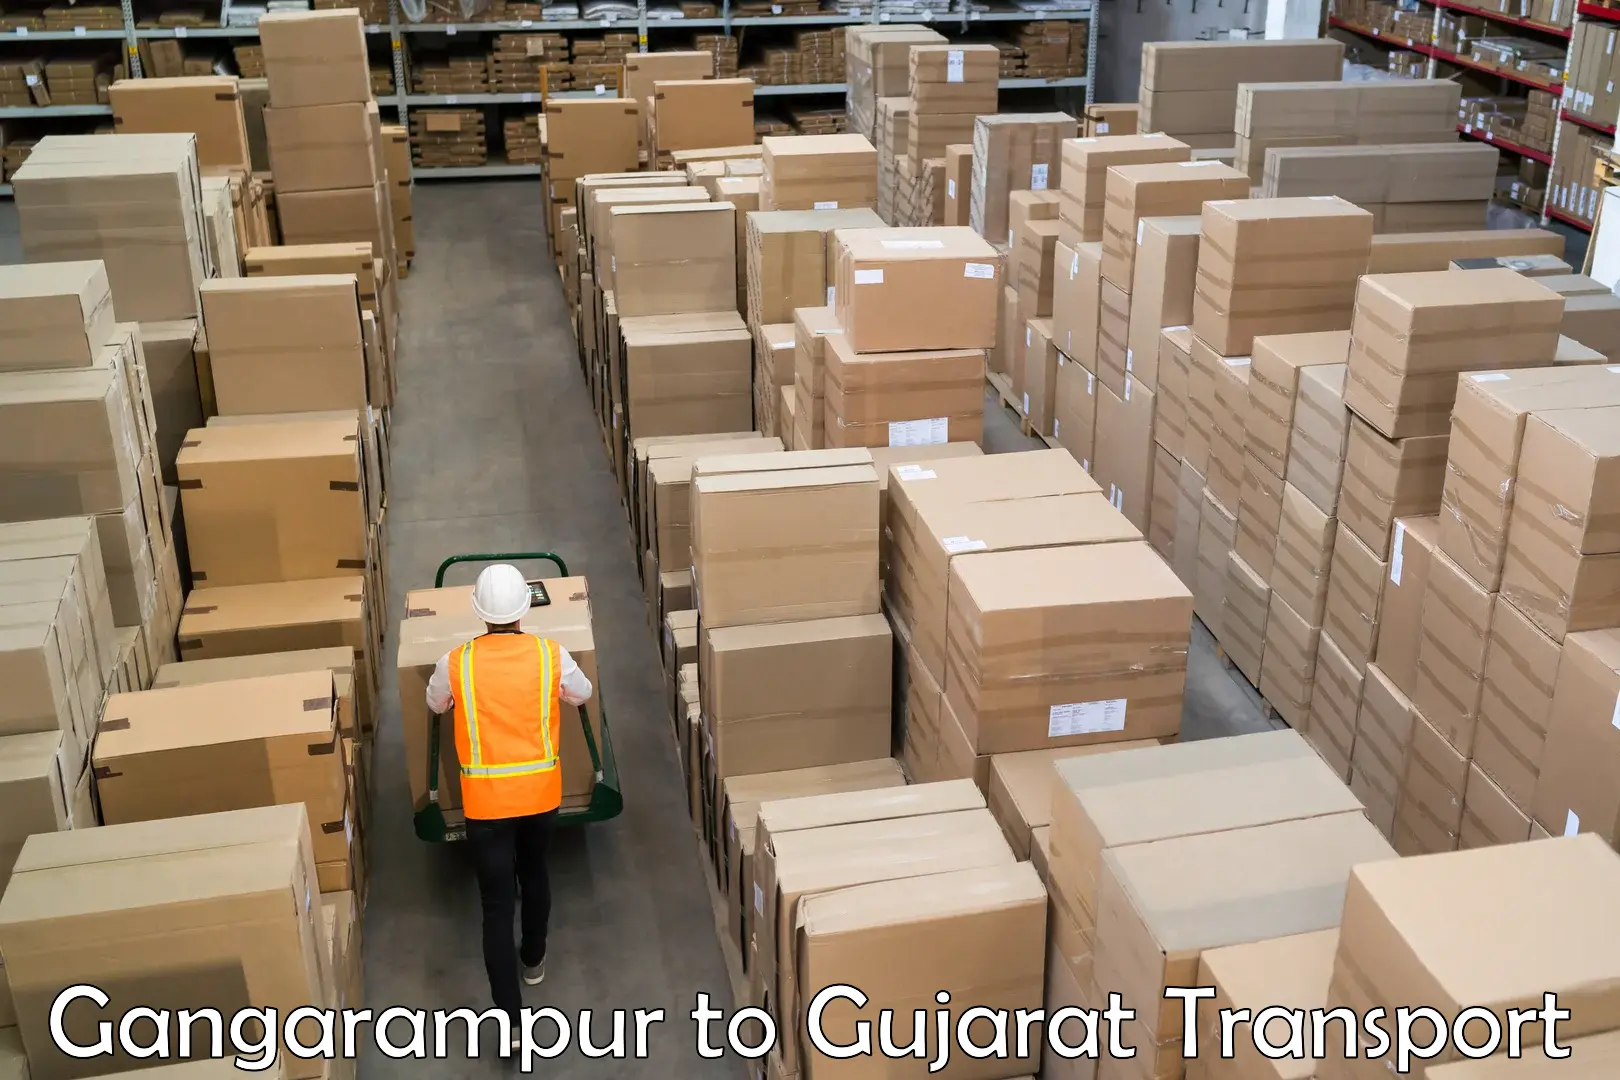 Furniture transport service Gangarampur to Gujarat